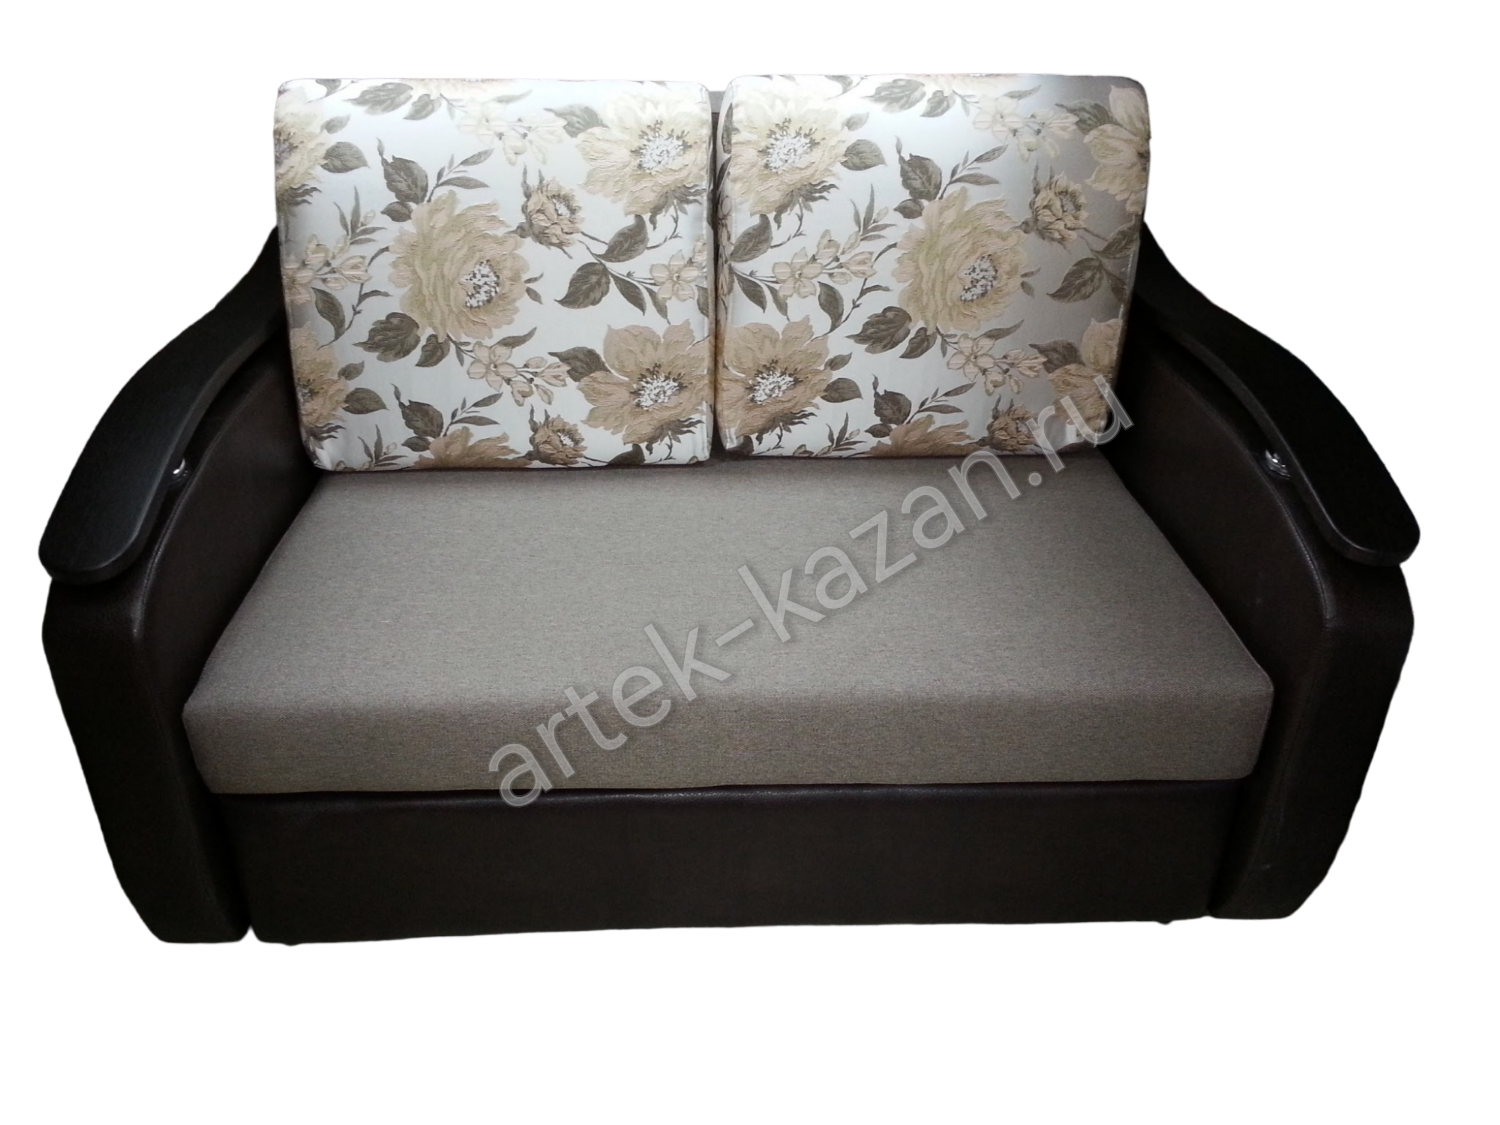 Мини диван на выкатном механизме Миник фото № 11. Купить недорогой диван по низкой цене от производителя можно у нас.